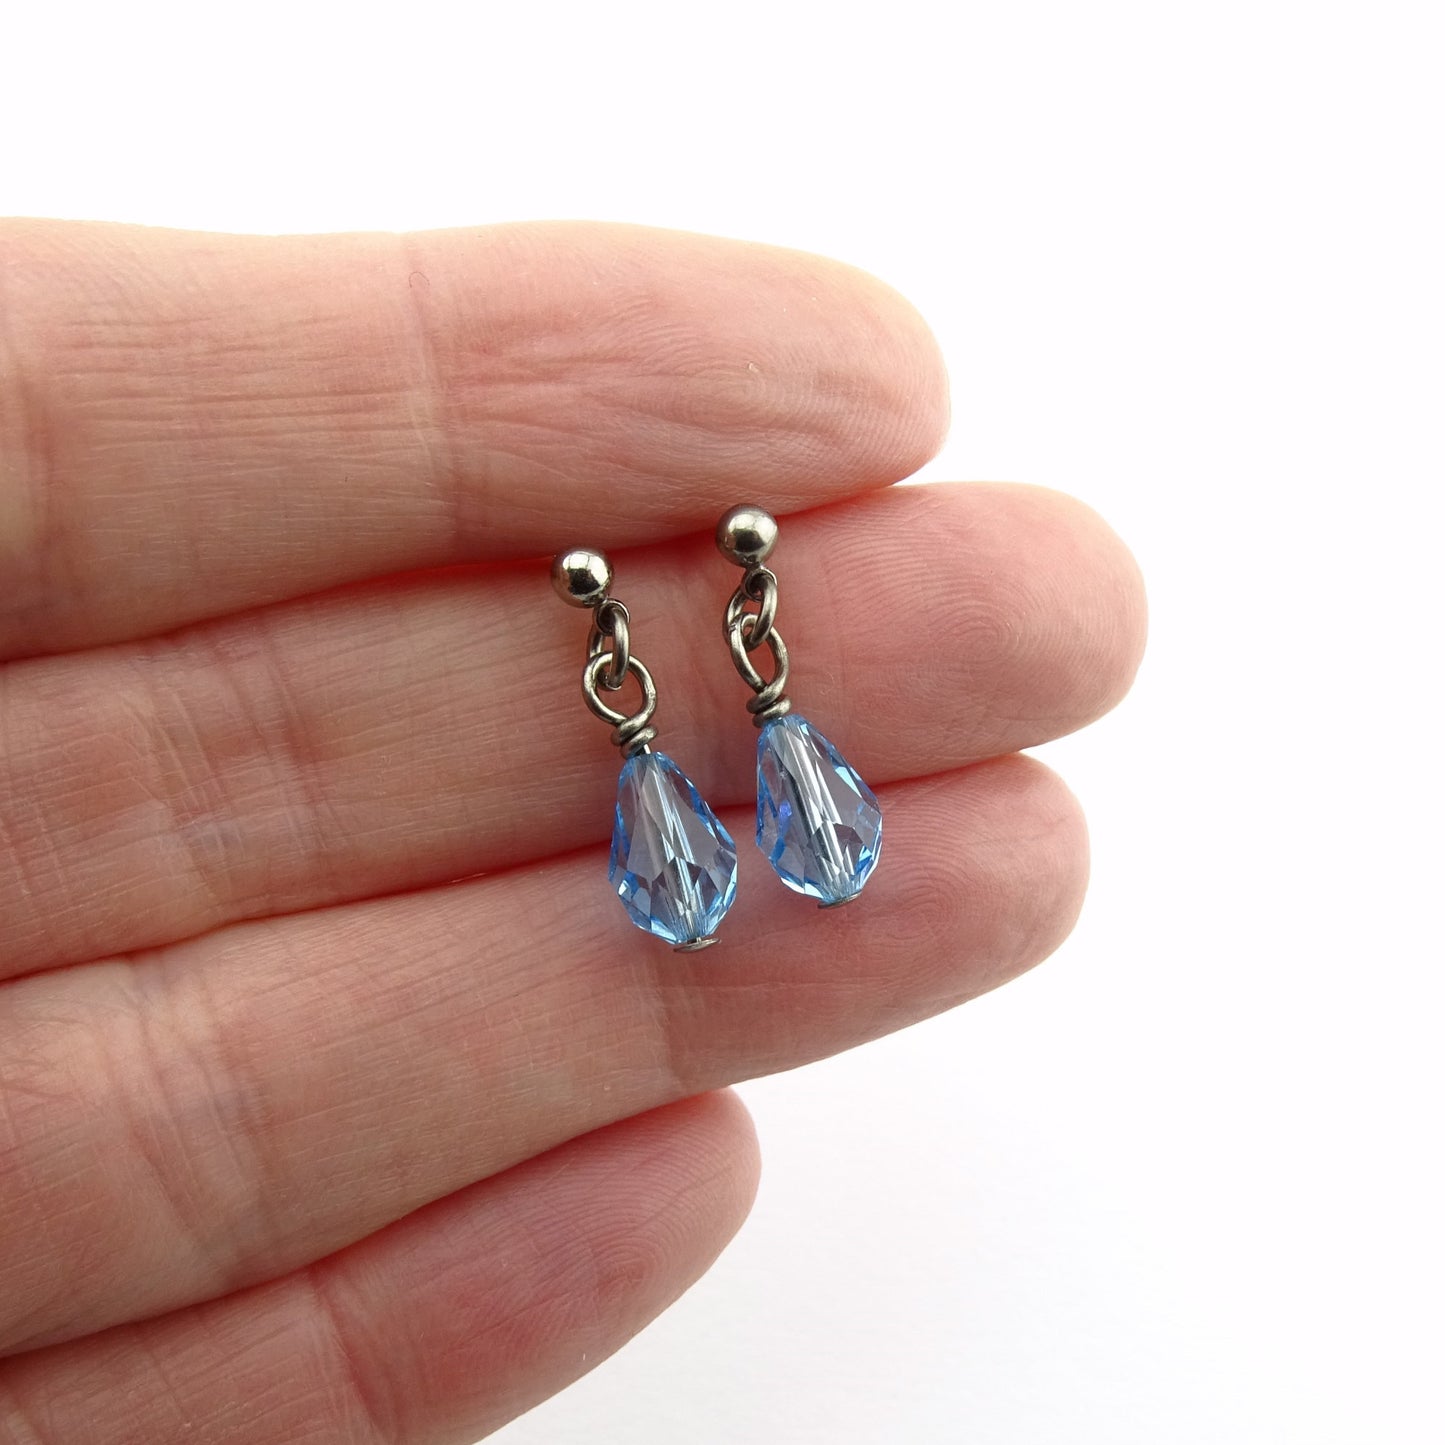 Aquamarine Teardrop Titanium Ball Stud Earrings, Aqua Blue Raindrop Swarovski Crystal, Hypoallergenic Nickel Free Sensitive Ears Earrings